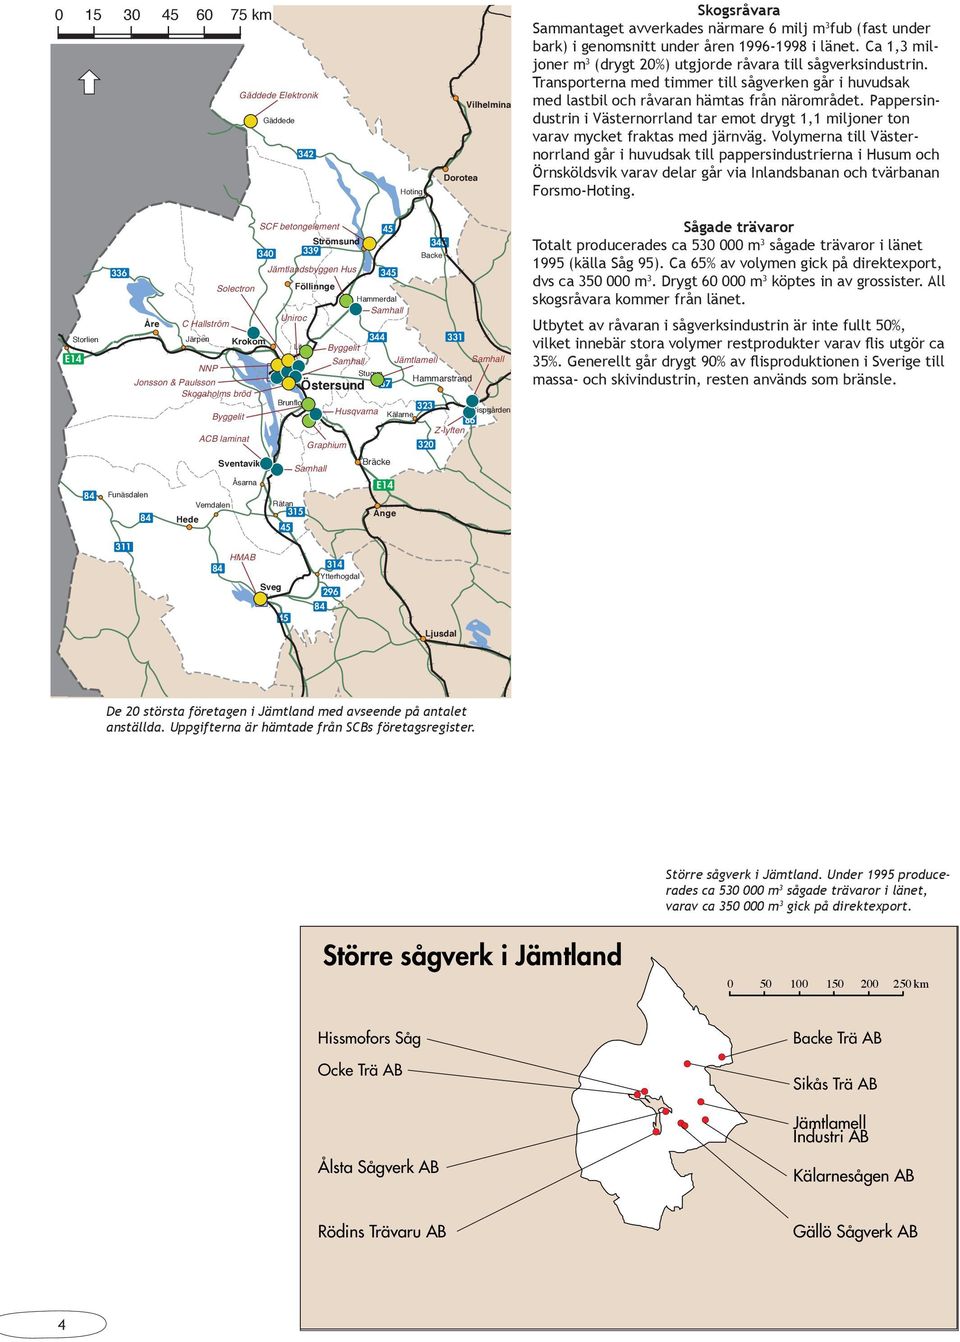 Pappersindustrin i Västernorrland tar emot drygt 1,1 miljoner ton varav mycket fraktas med järnväg.